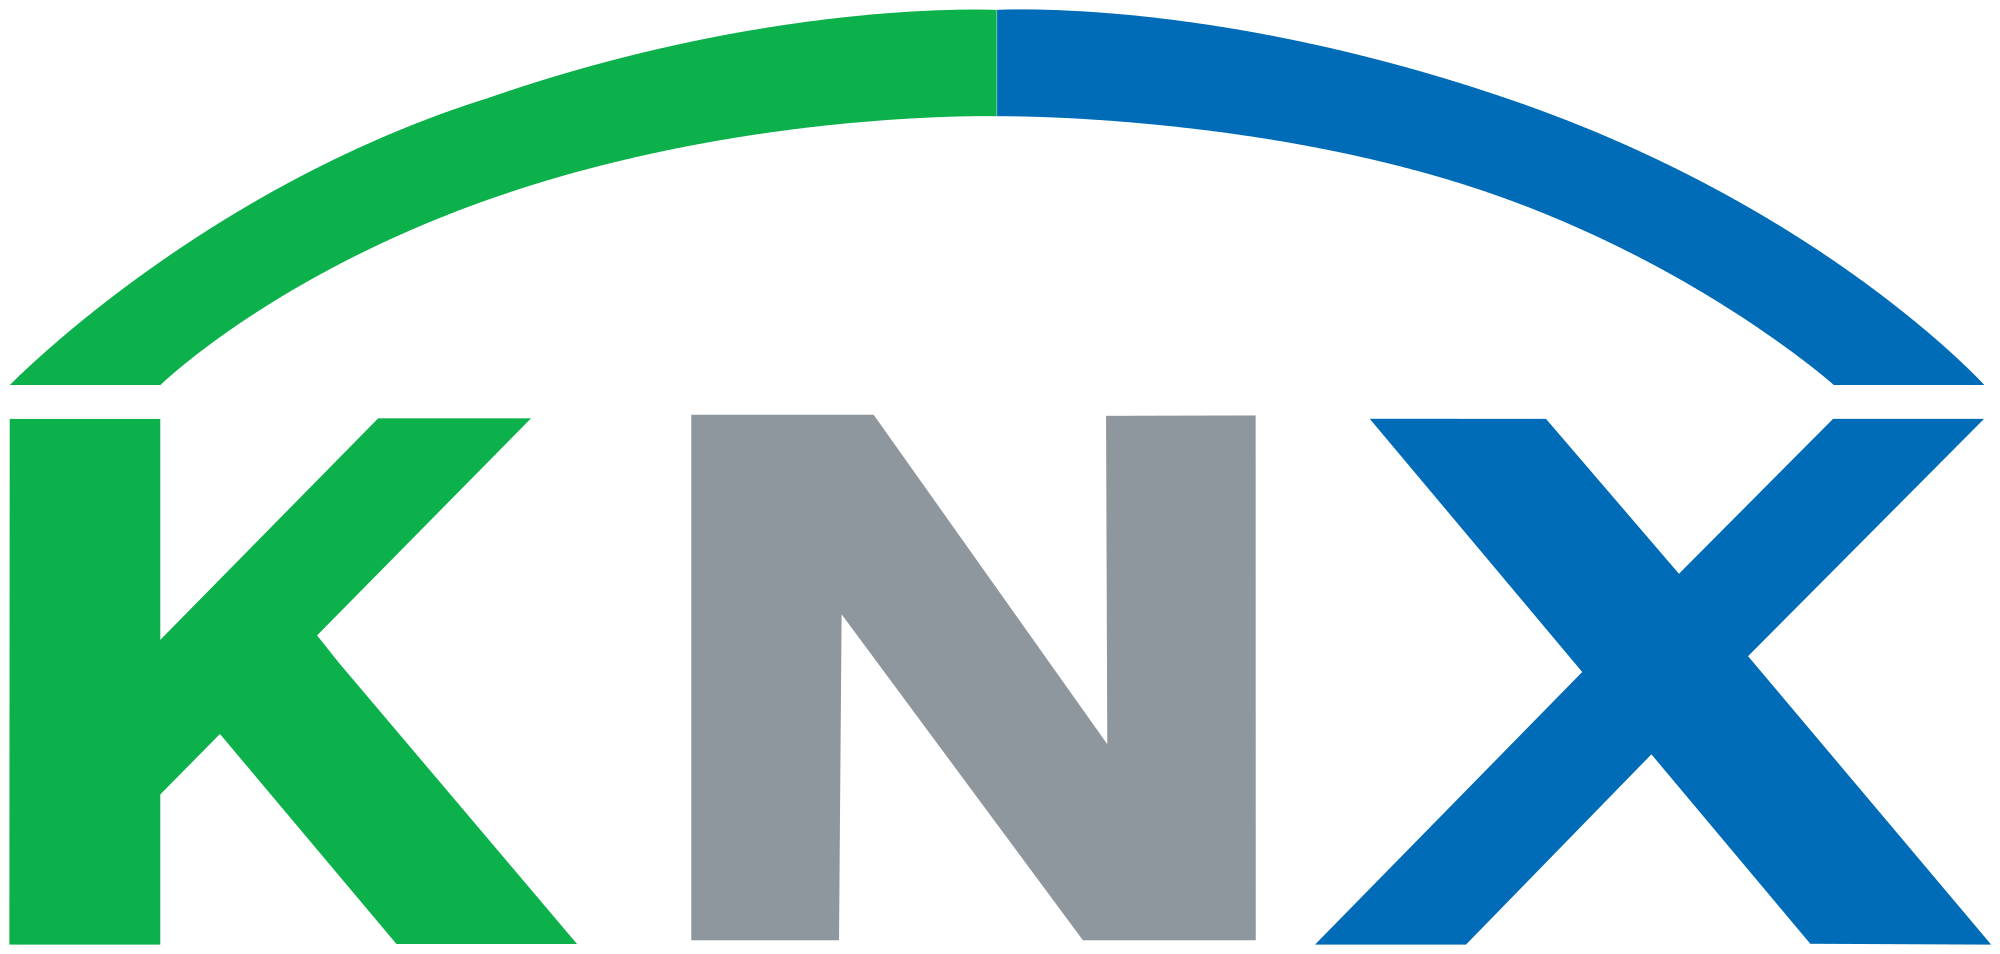 KNX_logo